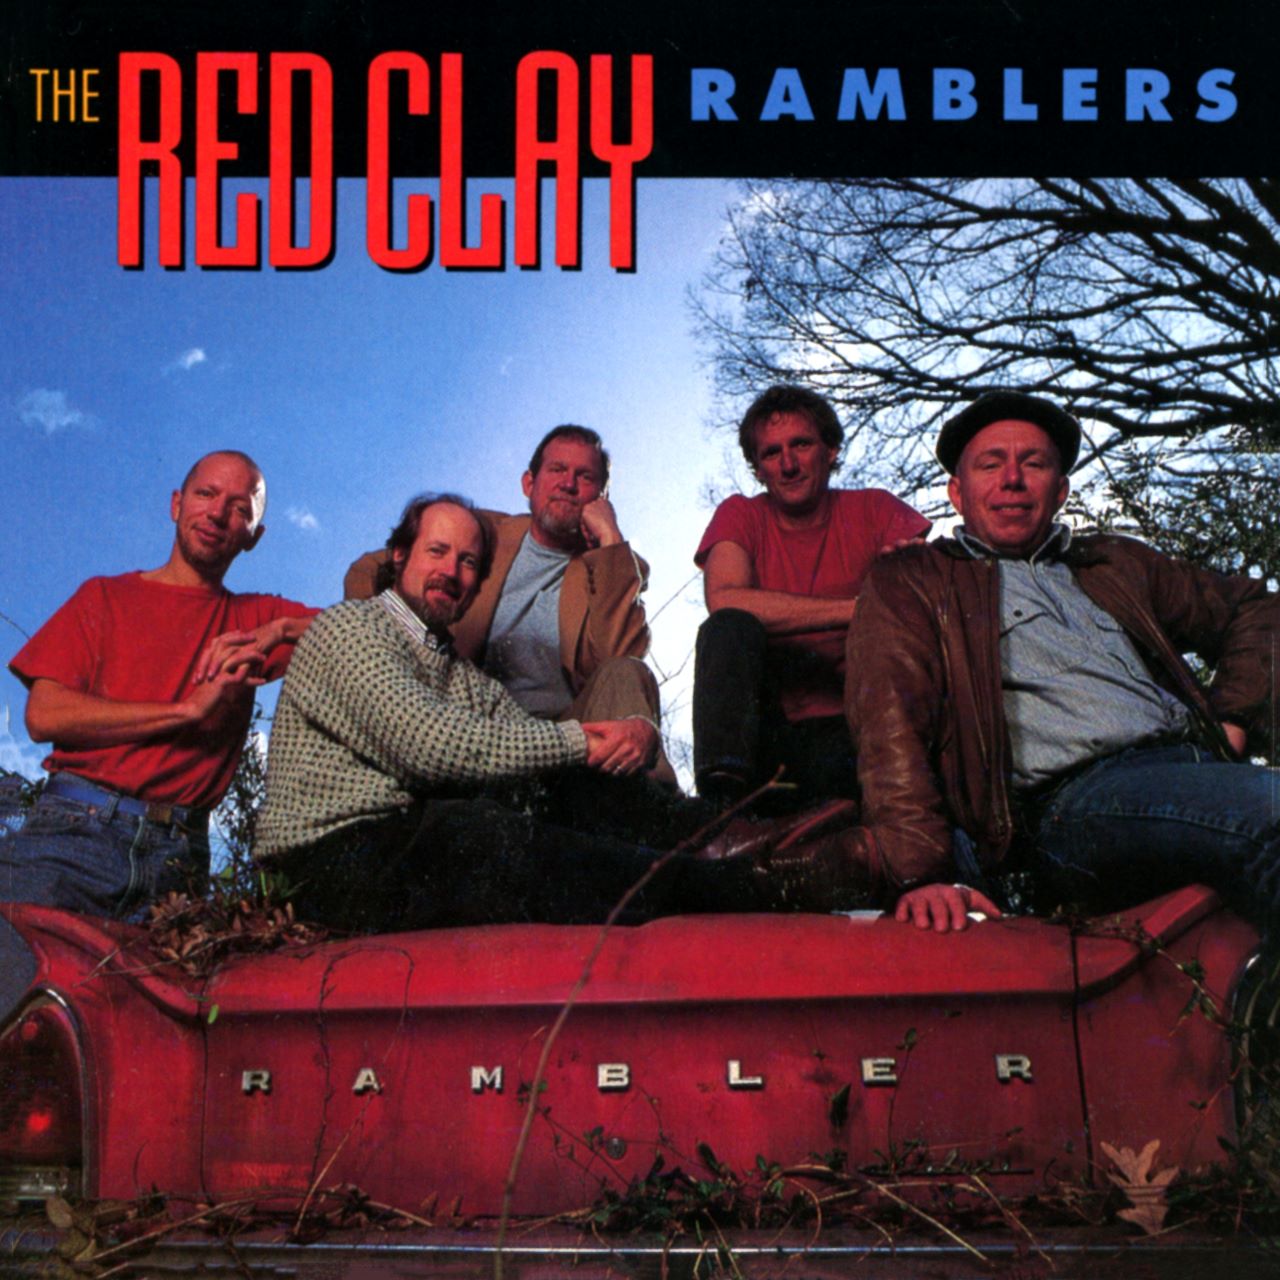 Red Clay Ramblers - Rambler cover album